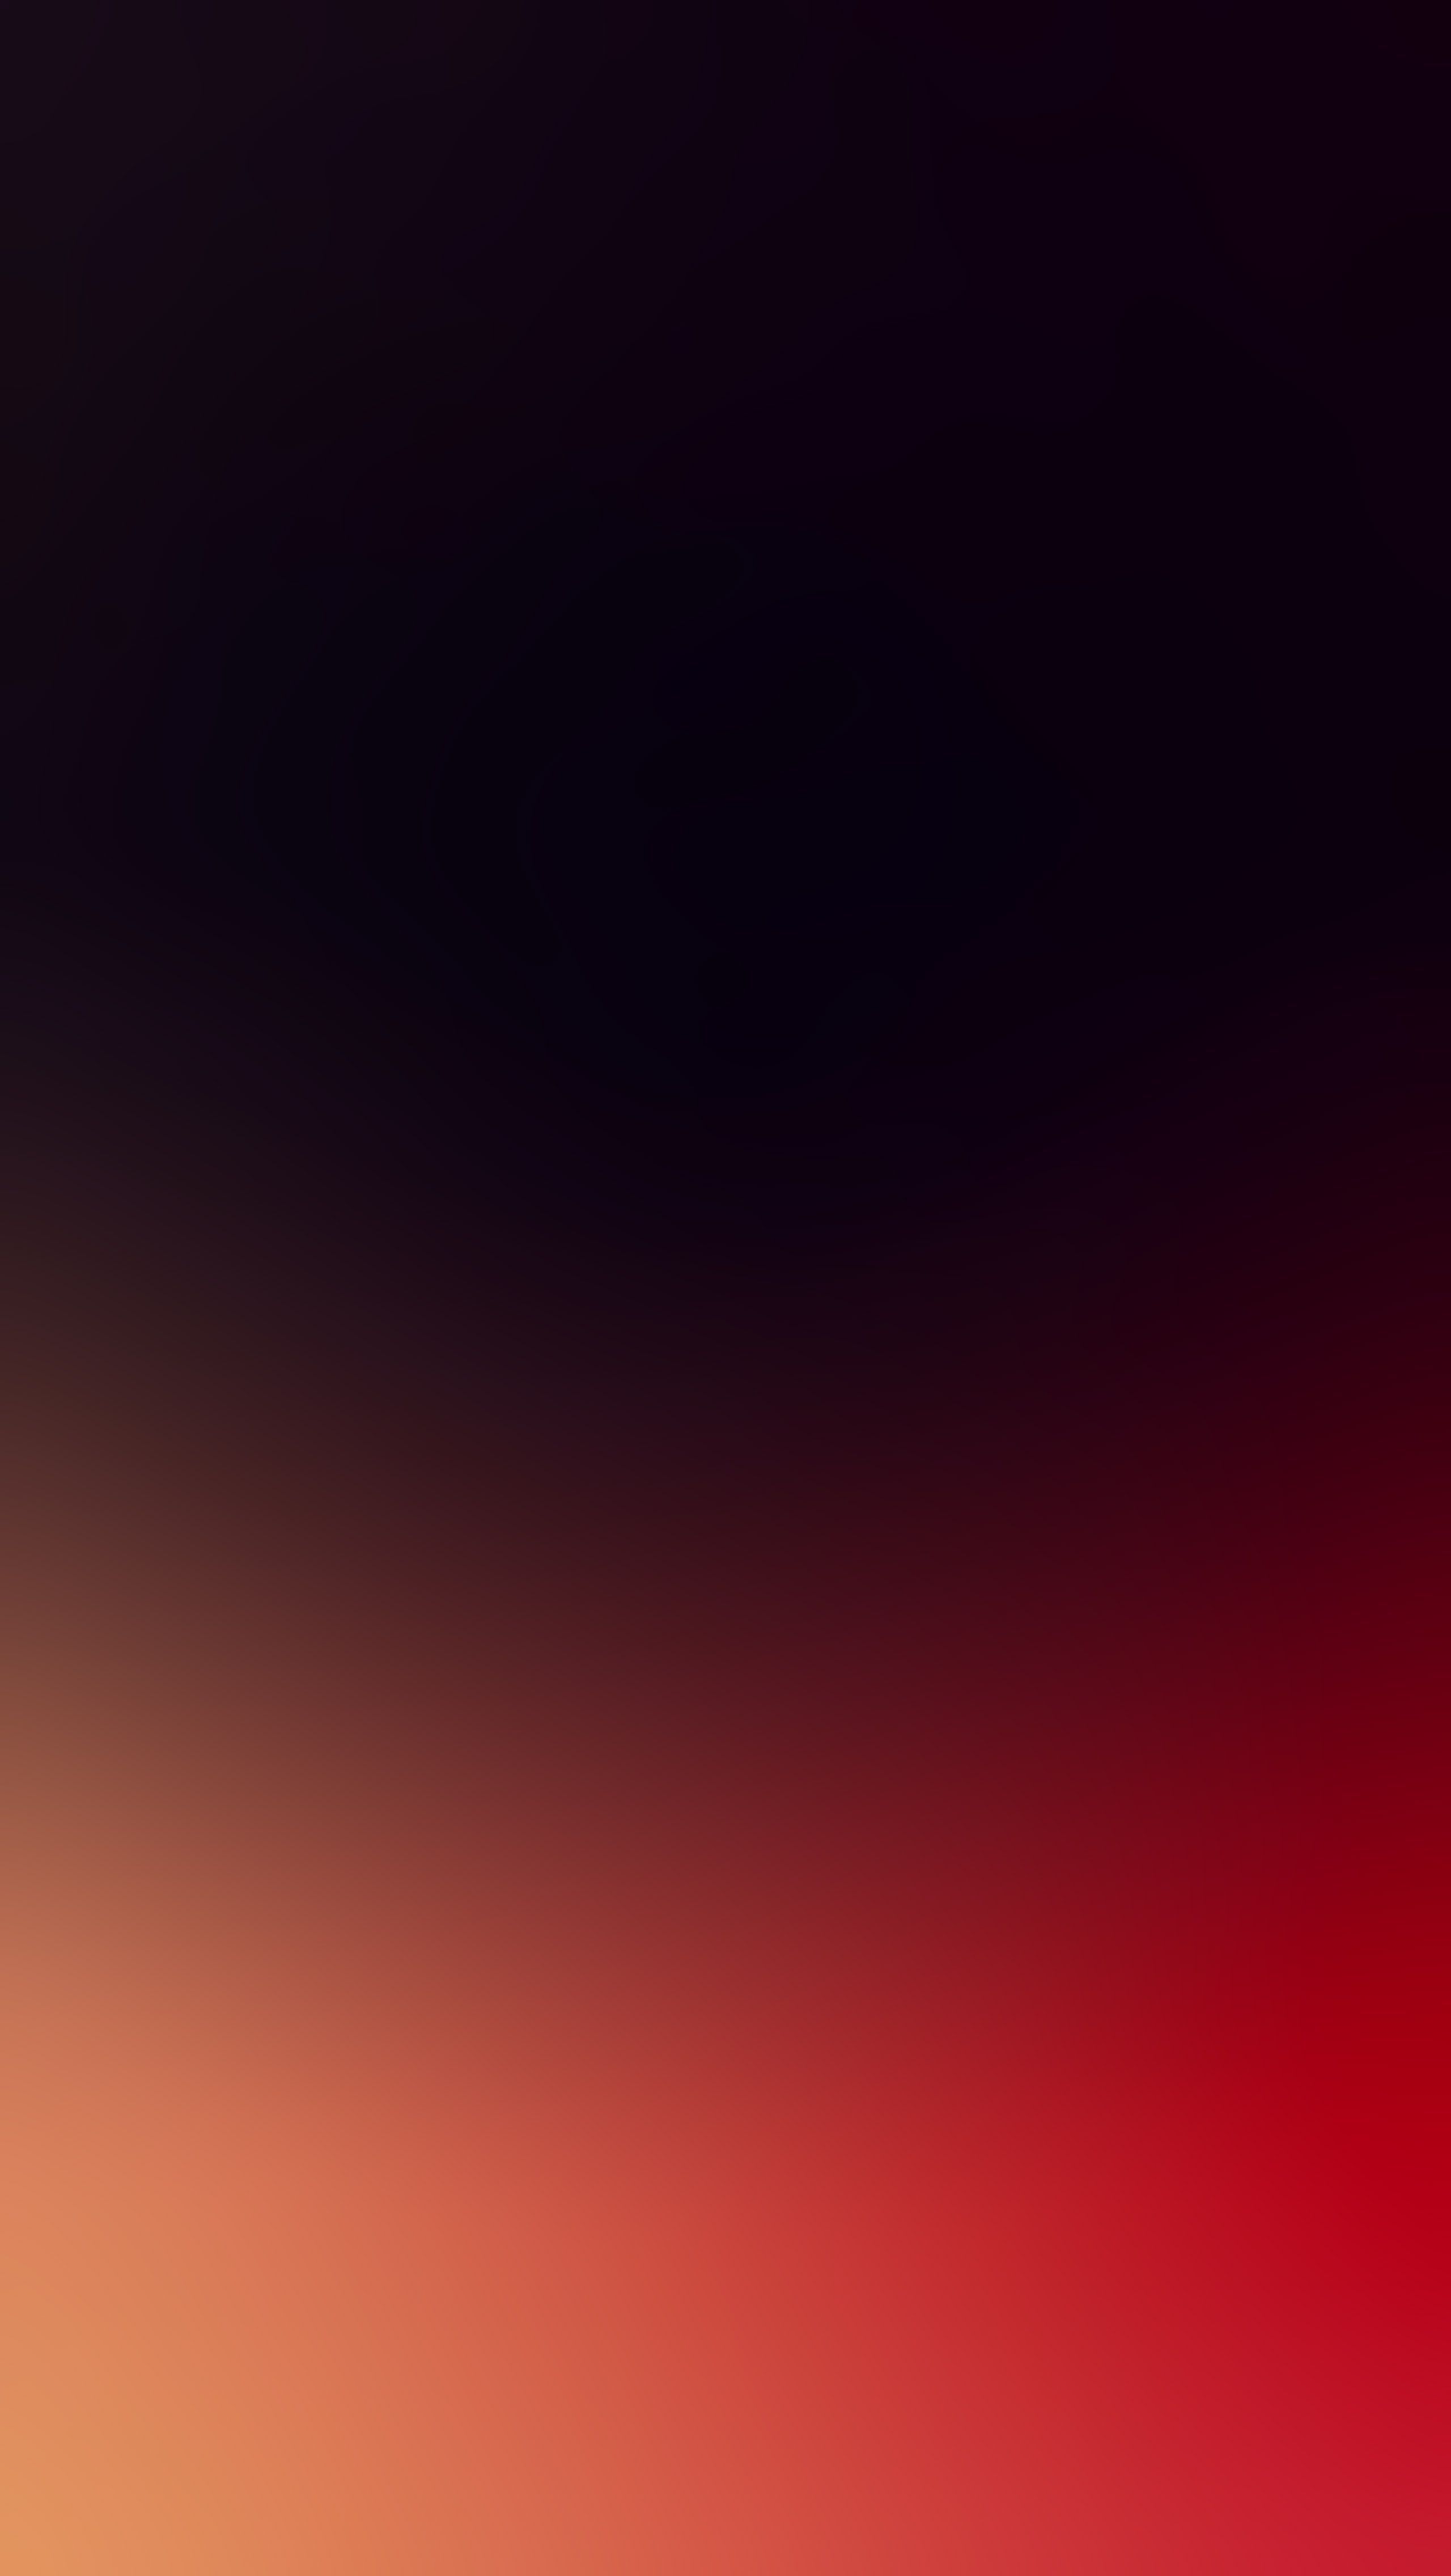 Red Gradient Wallpaper. Ombre wallpaper iphone, iPhone 6 wallpaper background, iPhone 6s wallpaper